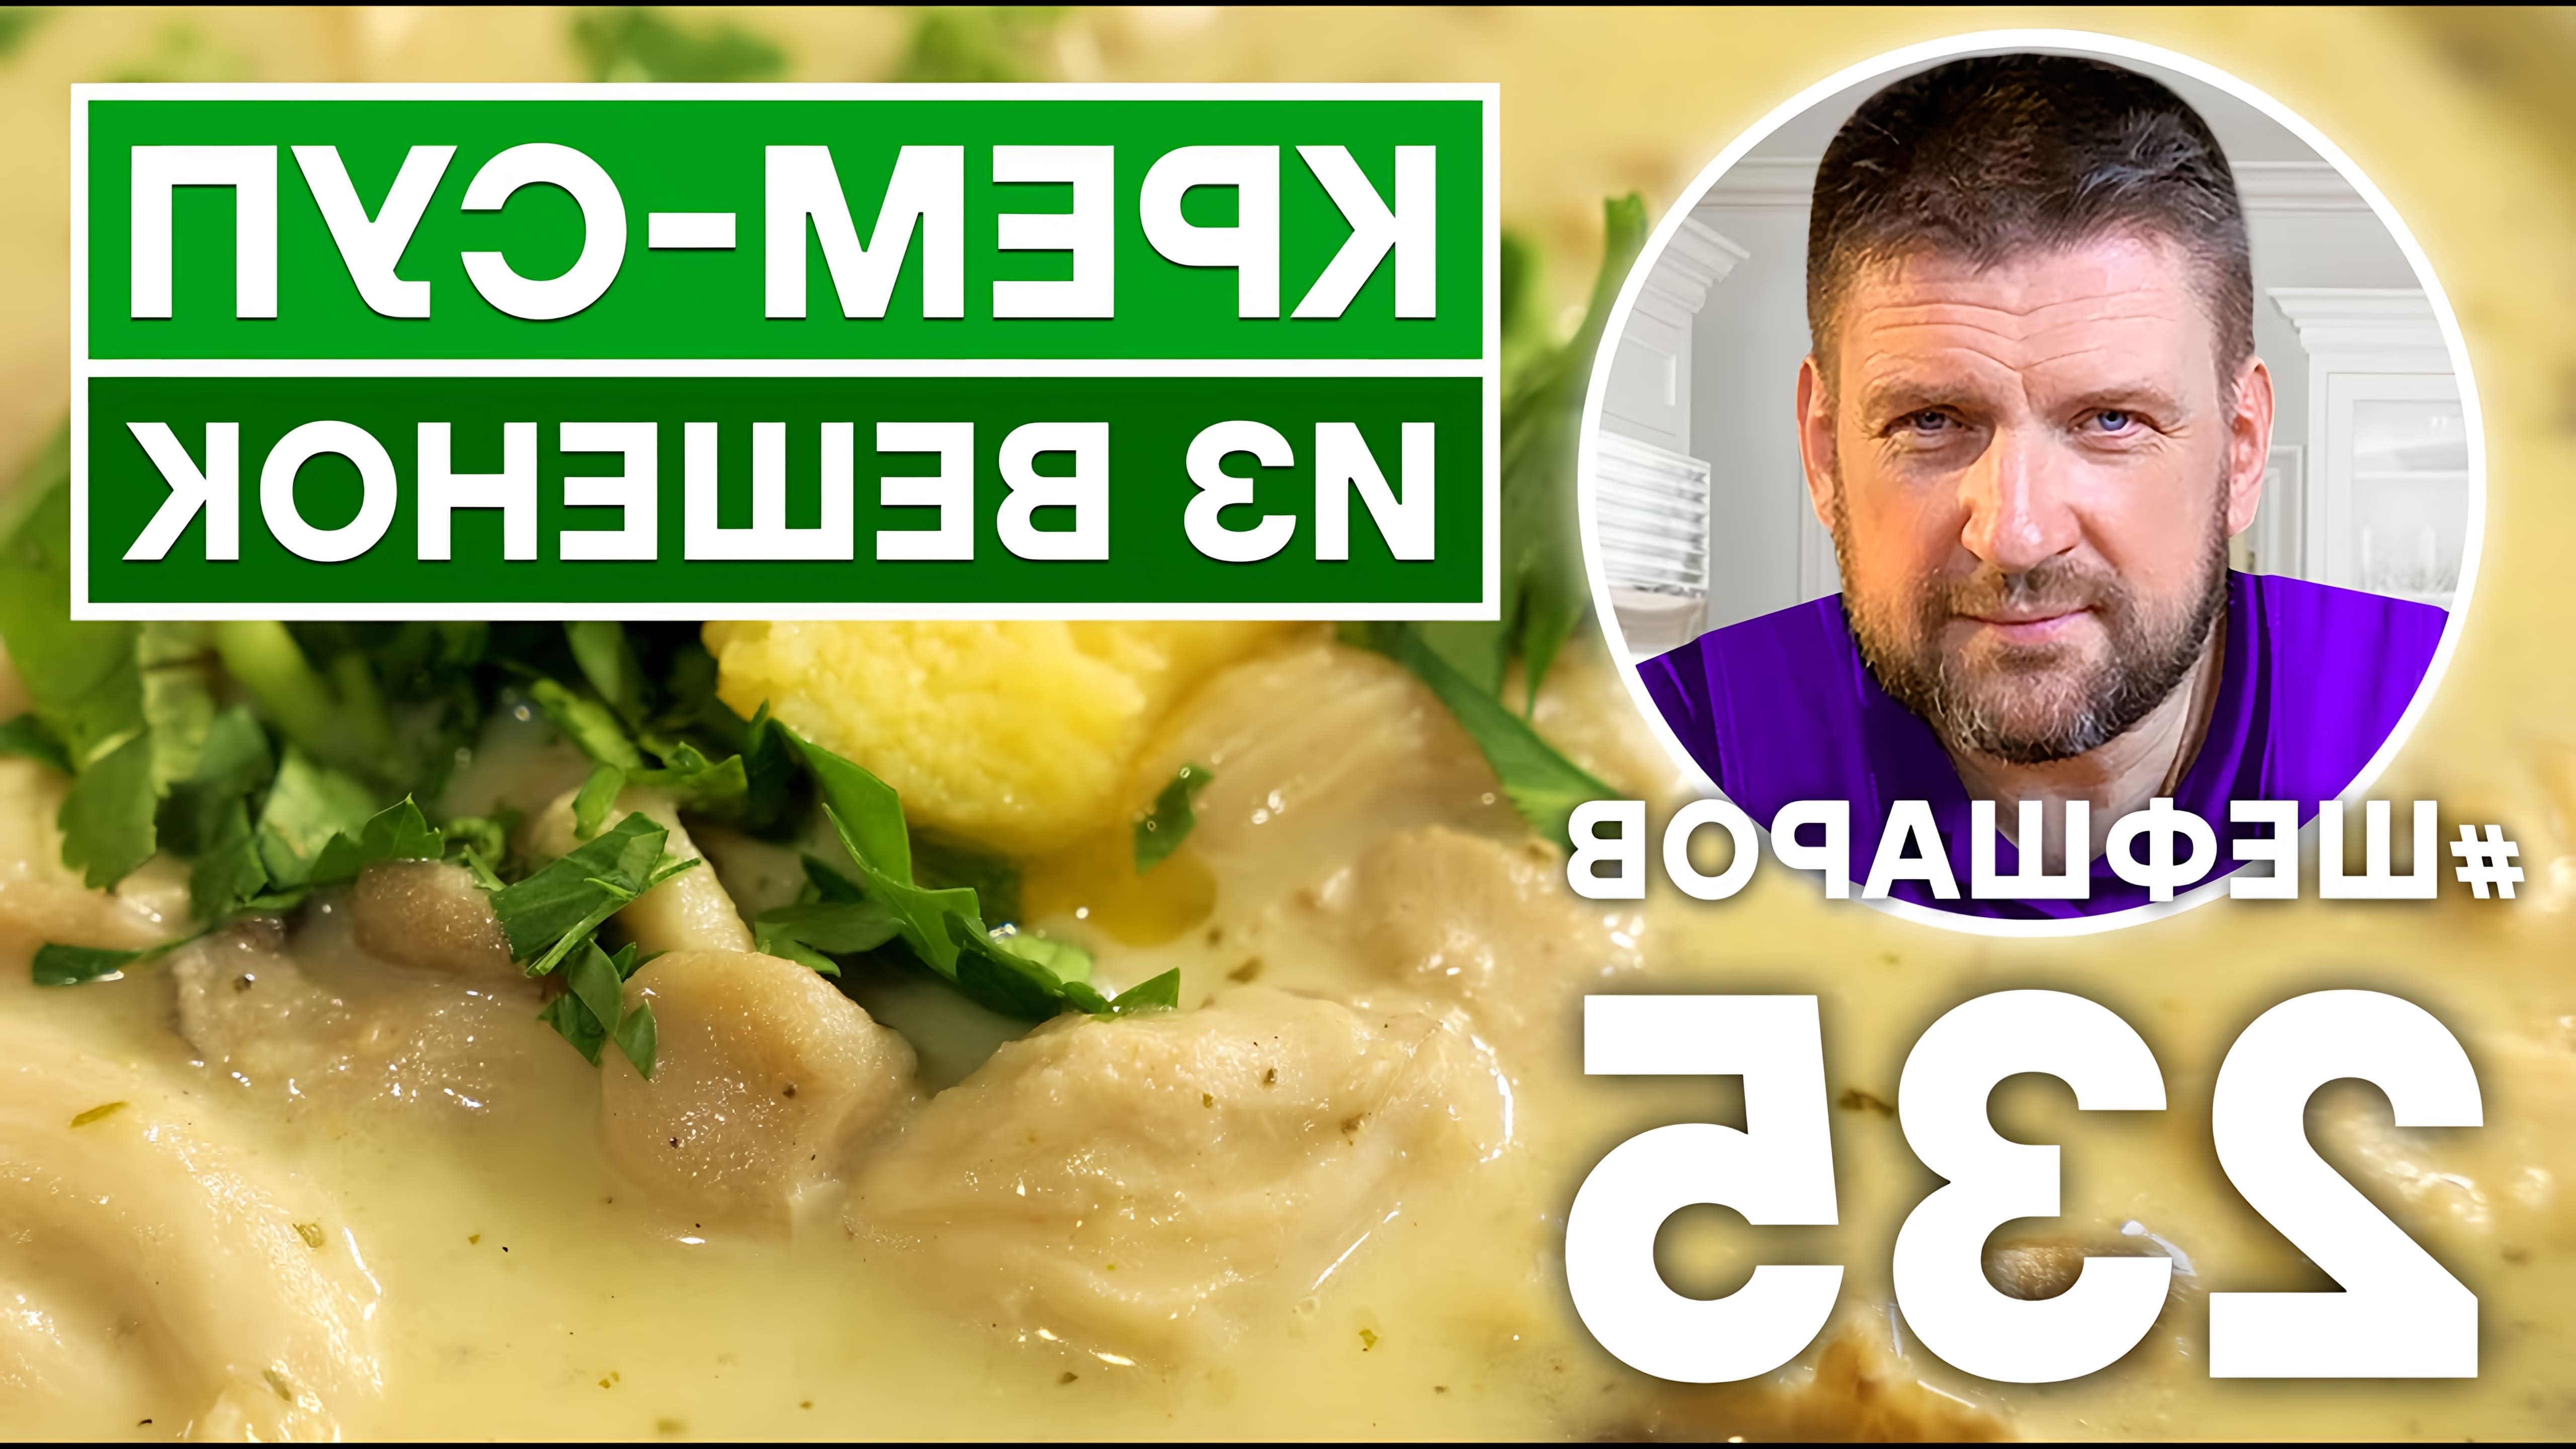 В этом видео шеф-повар готовит необычный крем-суп из вешенок